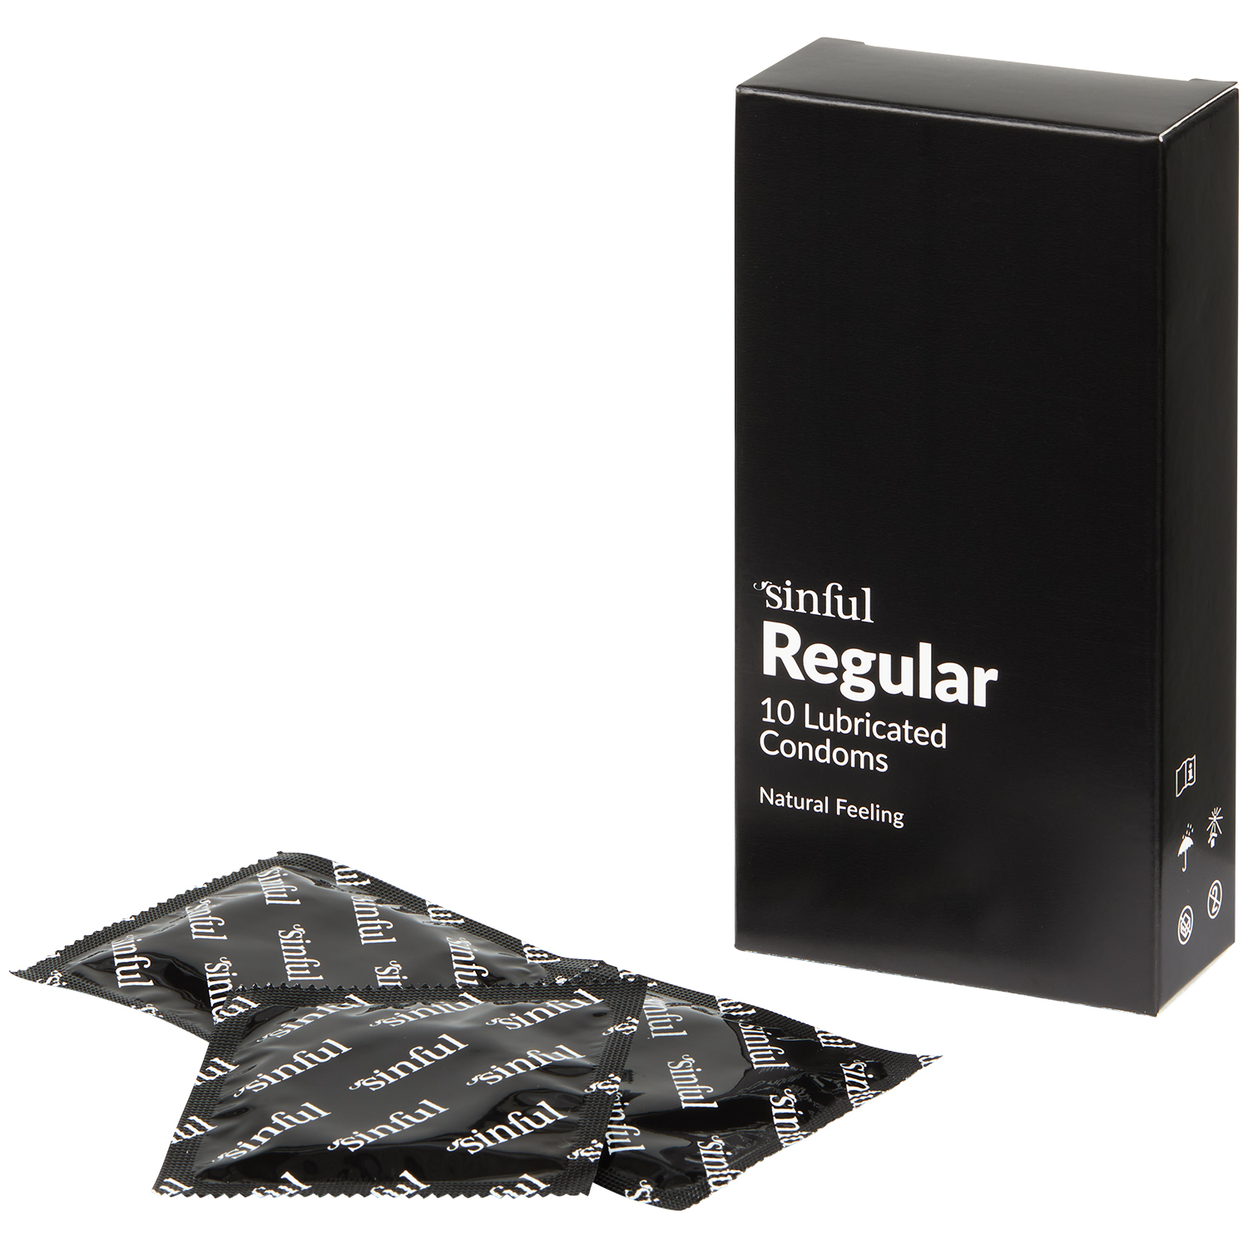 3 sorte kondomer i indpakning med Sinful logo ved siden af stor sort æske